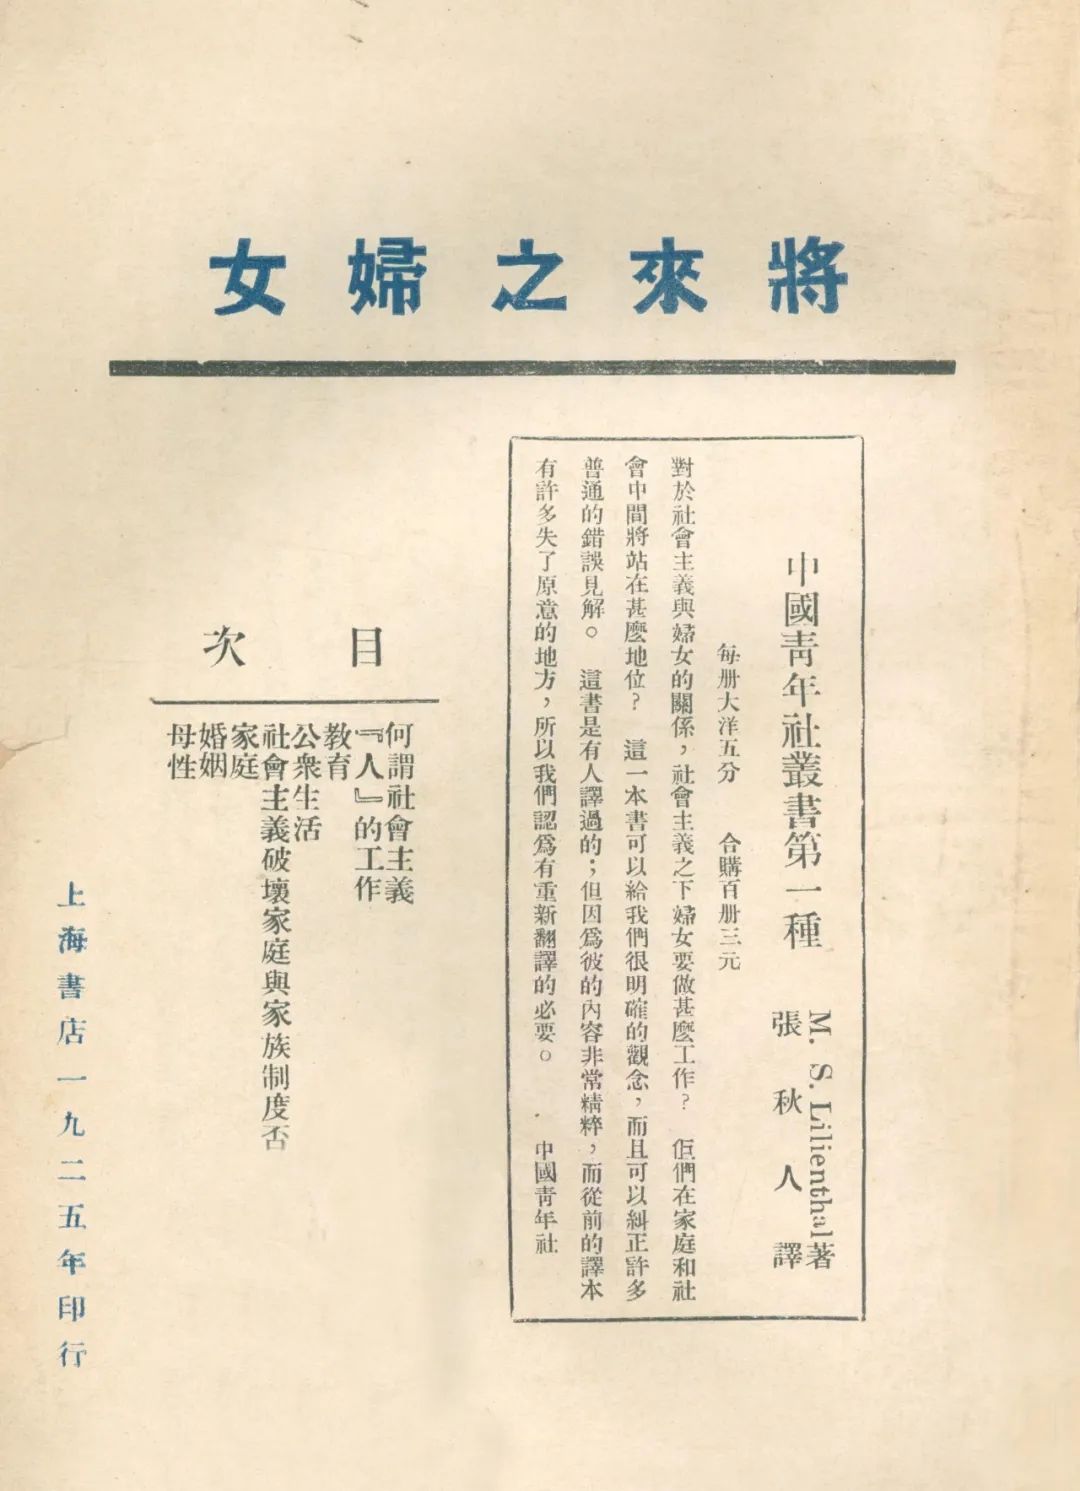 上海书店1925年印行的《将来之妇女》